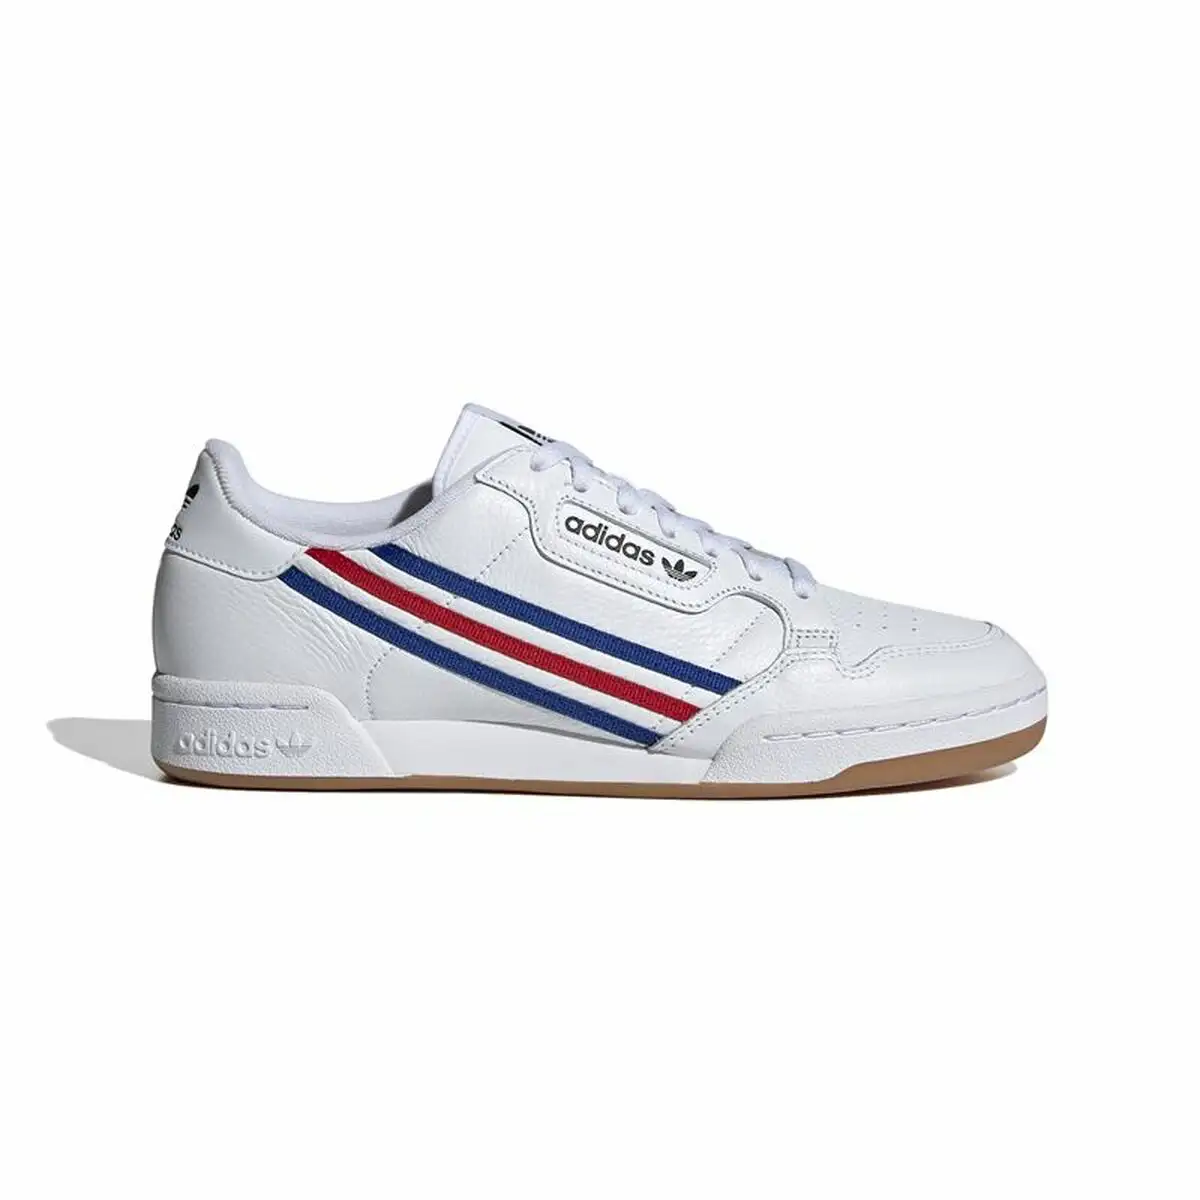 Chaussures de sport pour homme adidas continental 80 blanc_6618. DIAYTAR SENEGAL - Là où le Shopping devient une Fête des Sens. Plongez dans notre univers et choisissez des produits qui éveillent votre goût pour l'esthétique et l'authenticité.